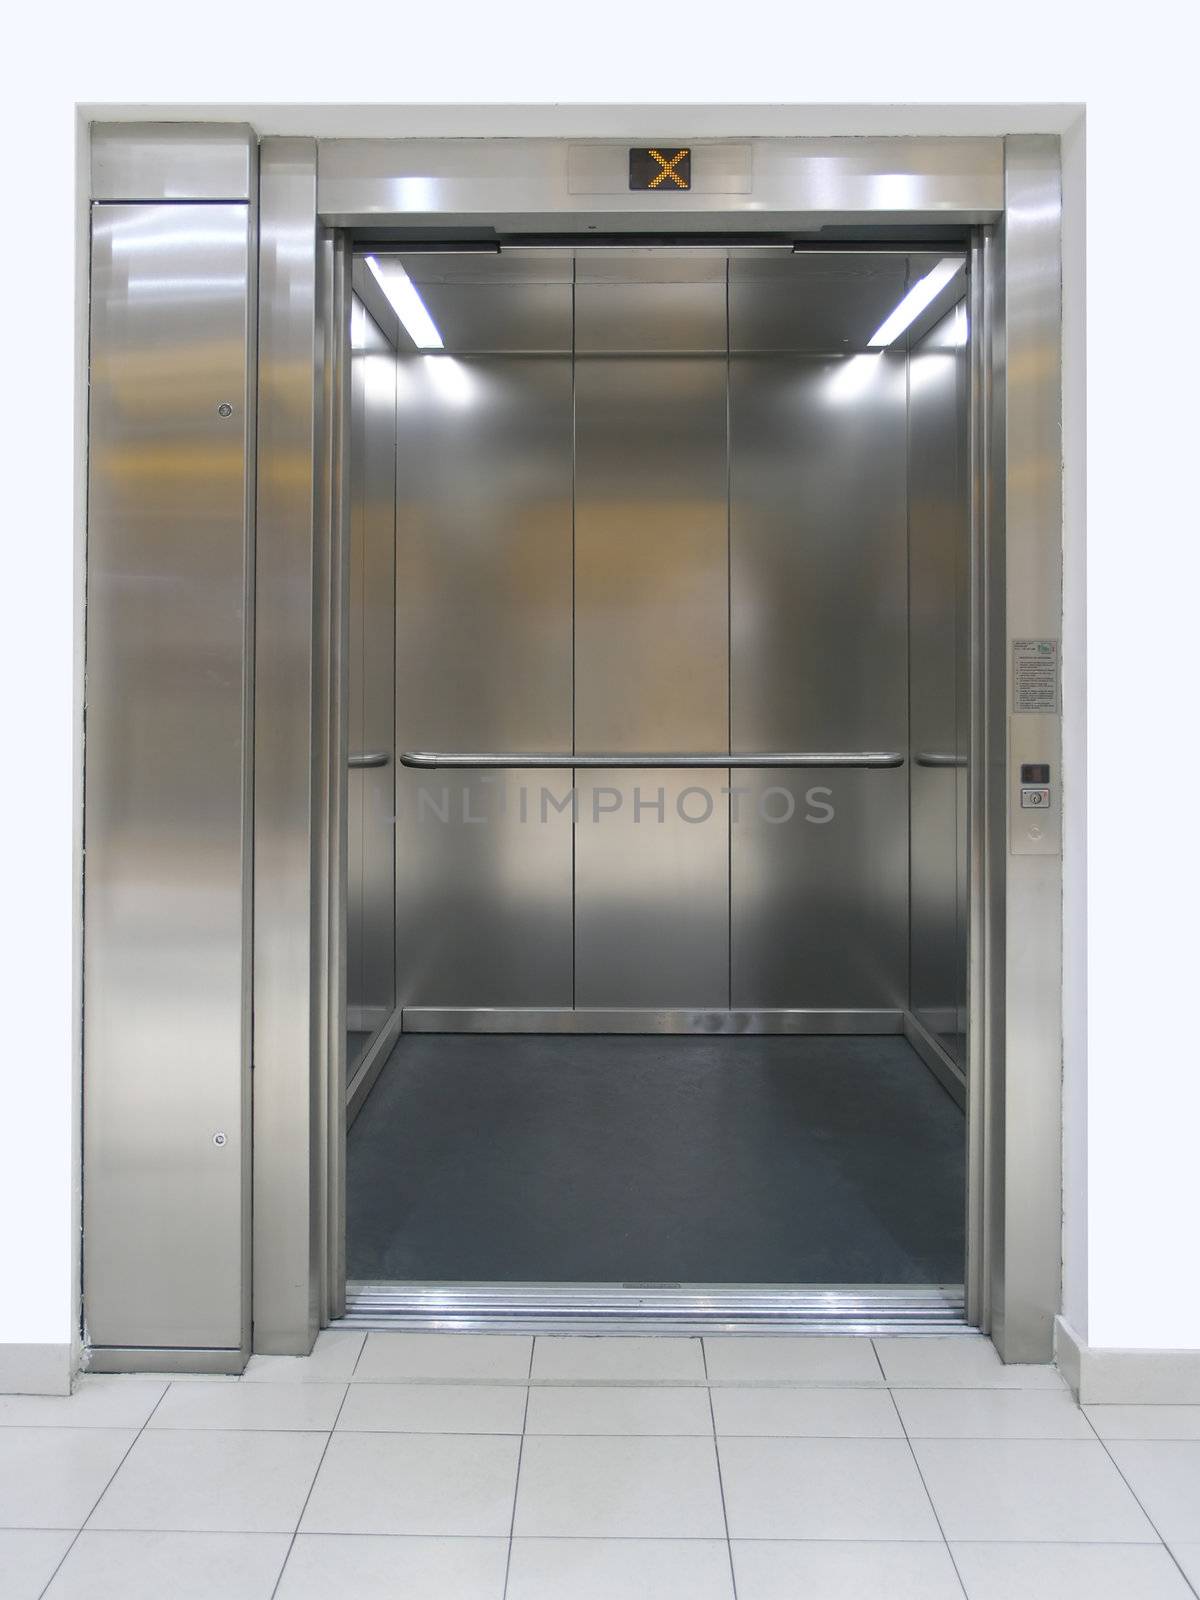 Elevator with open doors